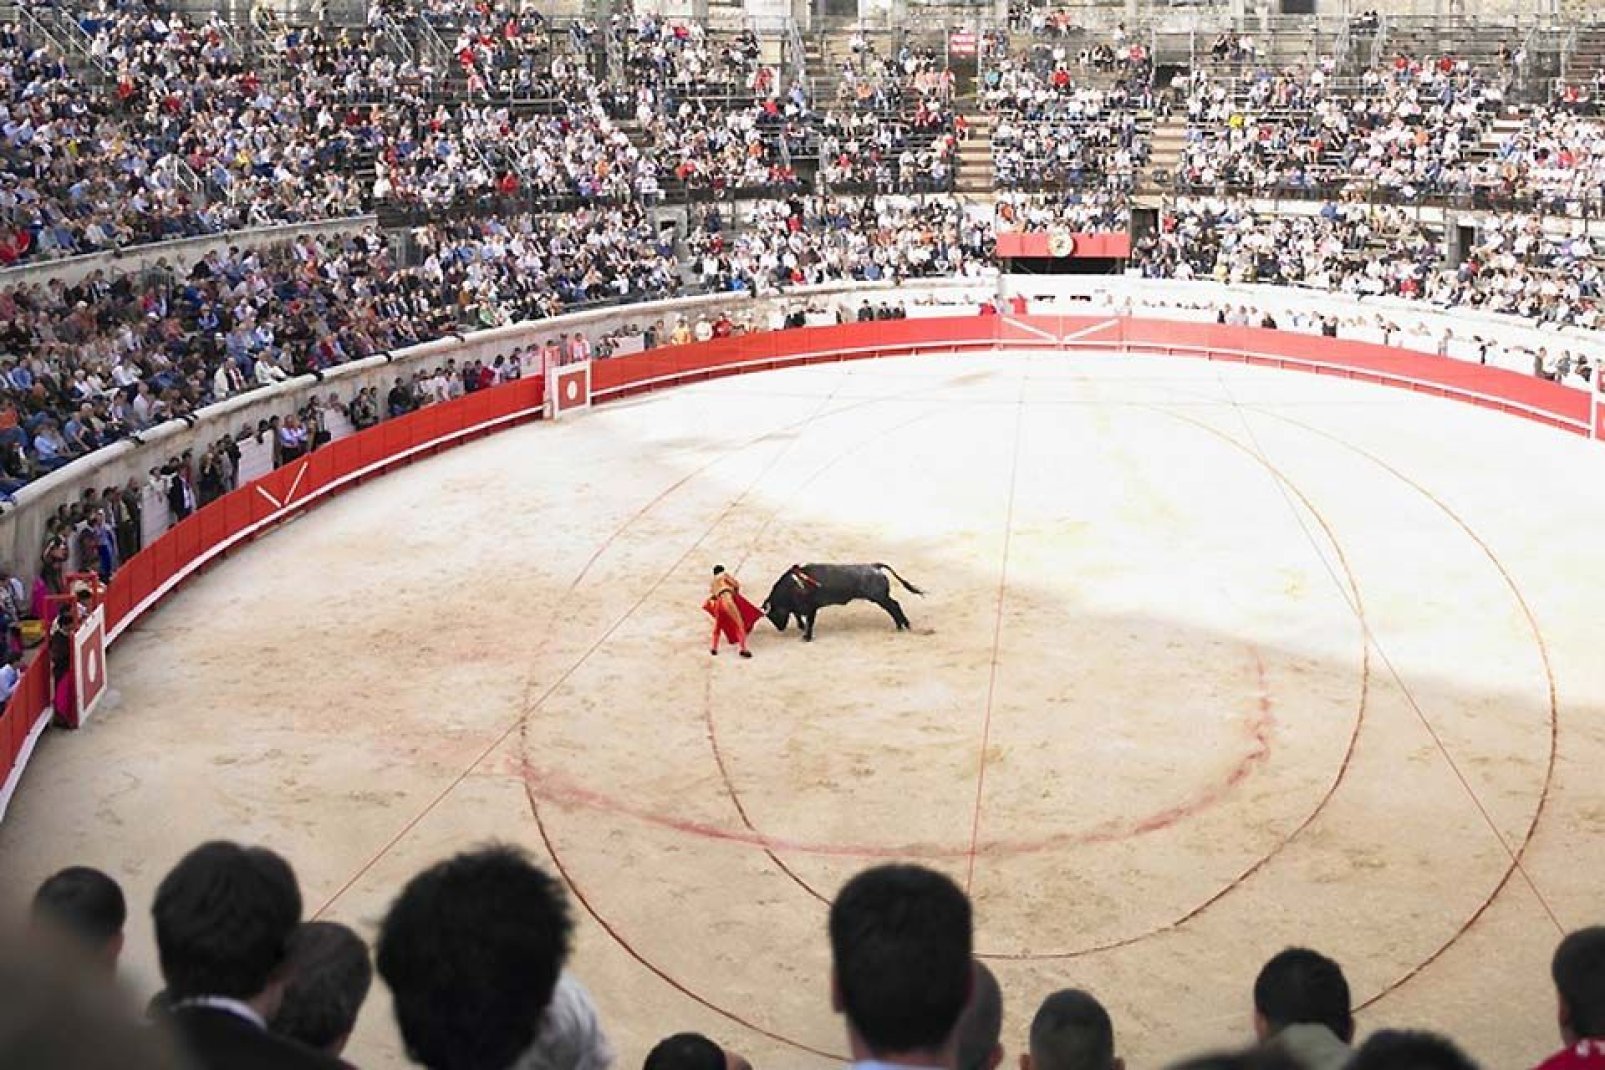 La corrida est une véritable institution dans la ville de Nîmes. Des spectacles se tiennent sont régulièrement dans l'arène de Nîmes.